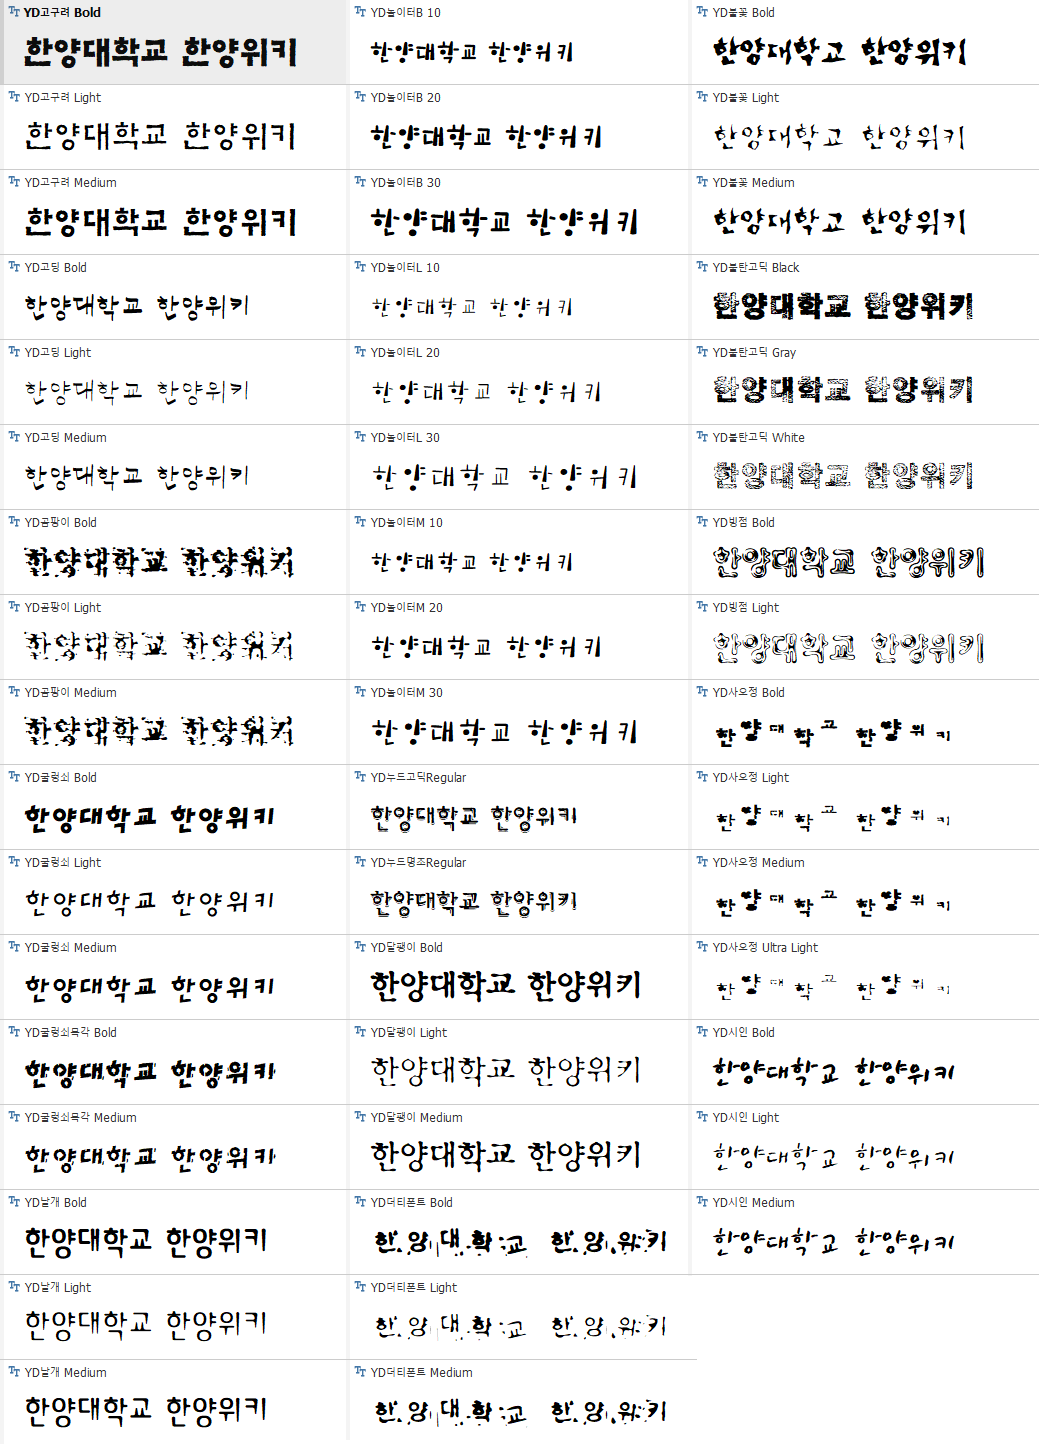 윤소호 2011 패키지 - 붓글씨1.png